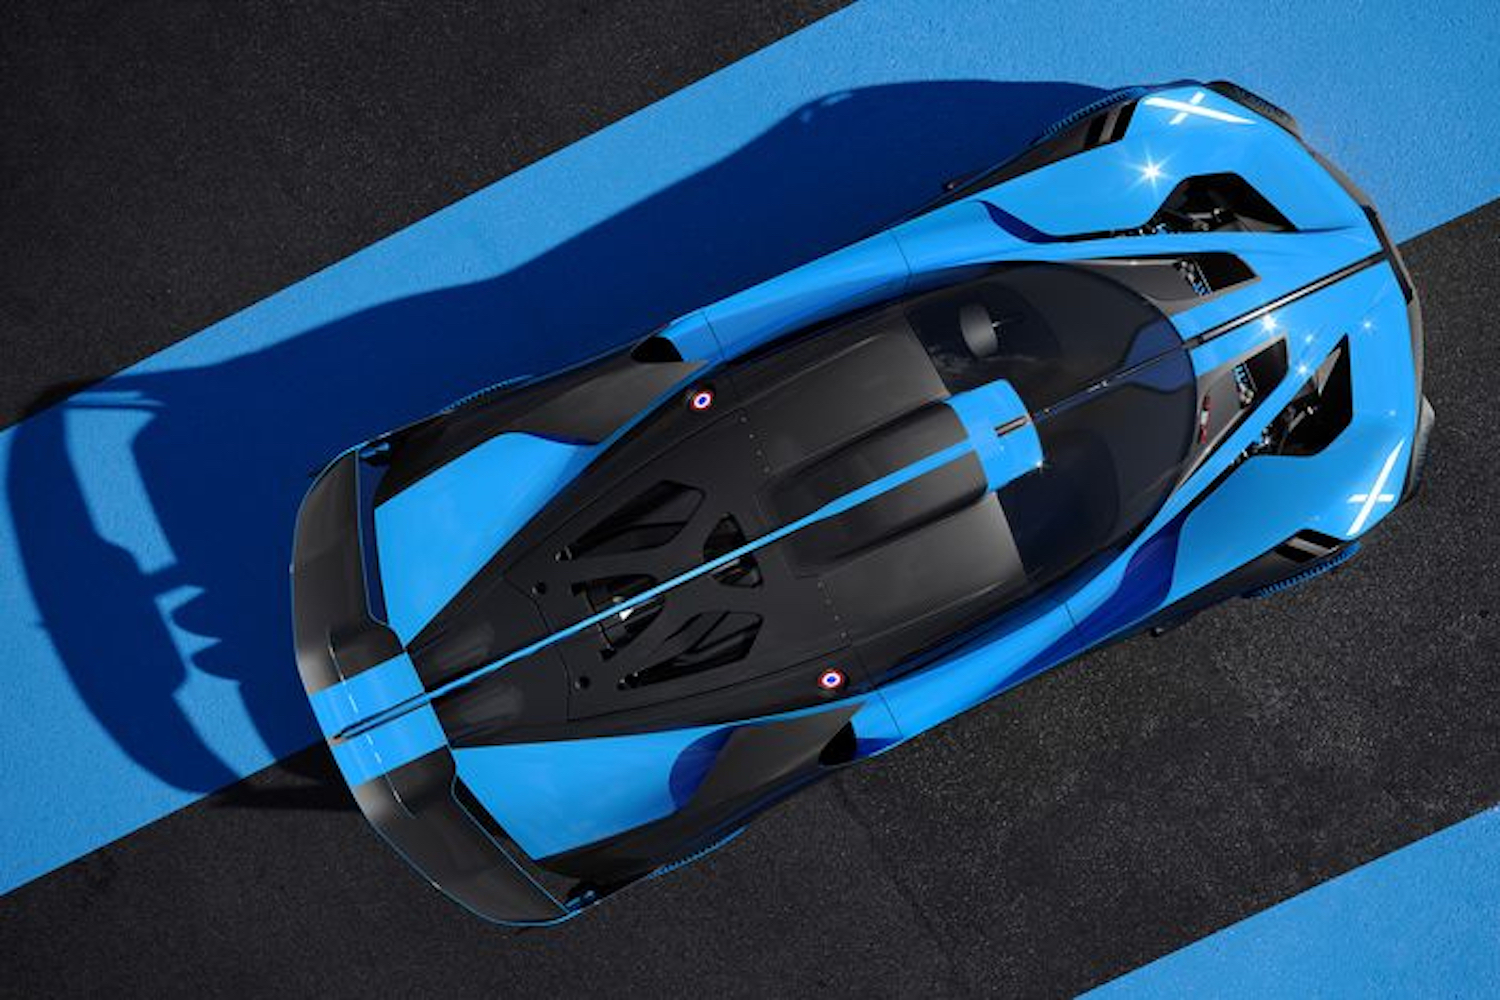 Bugatti Bolide Concept from above.